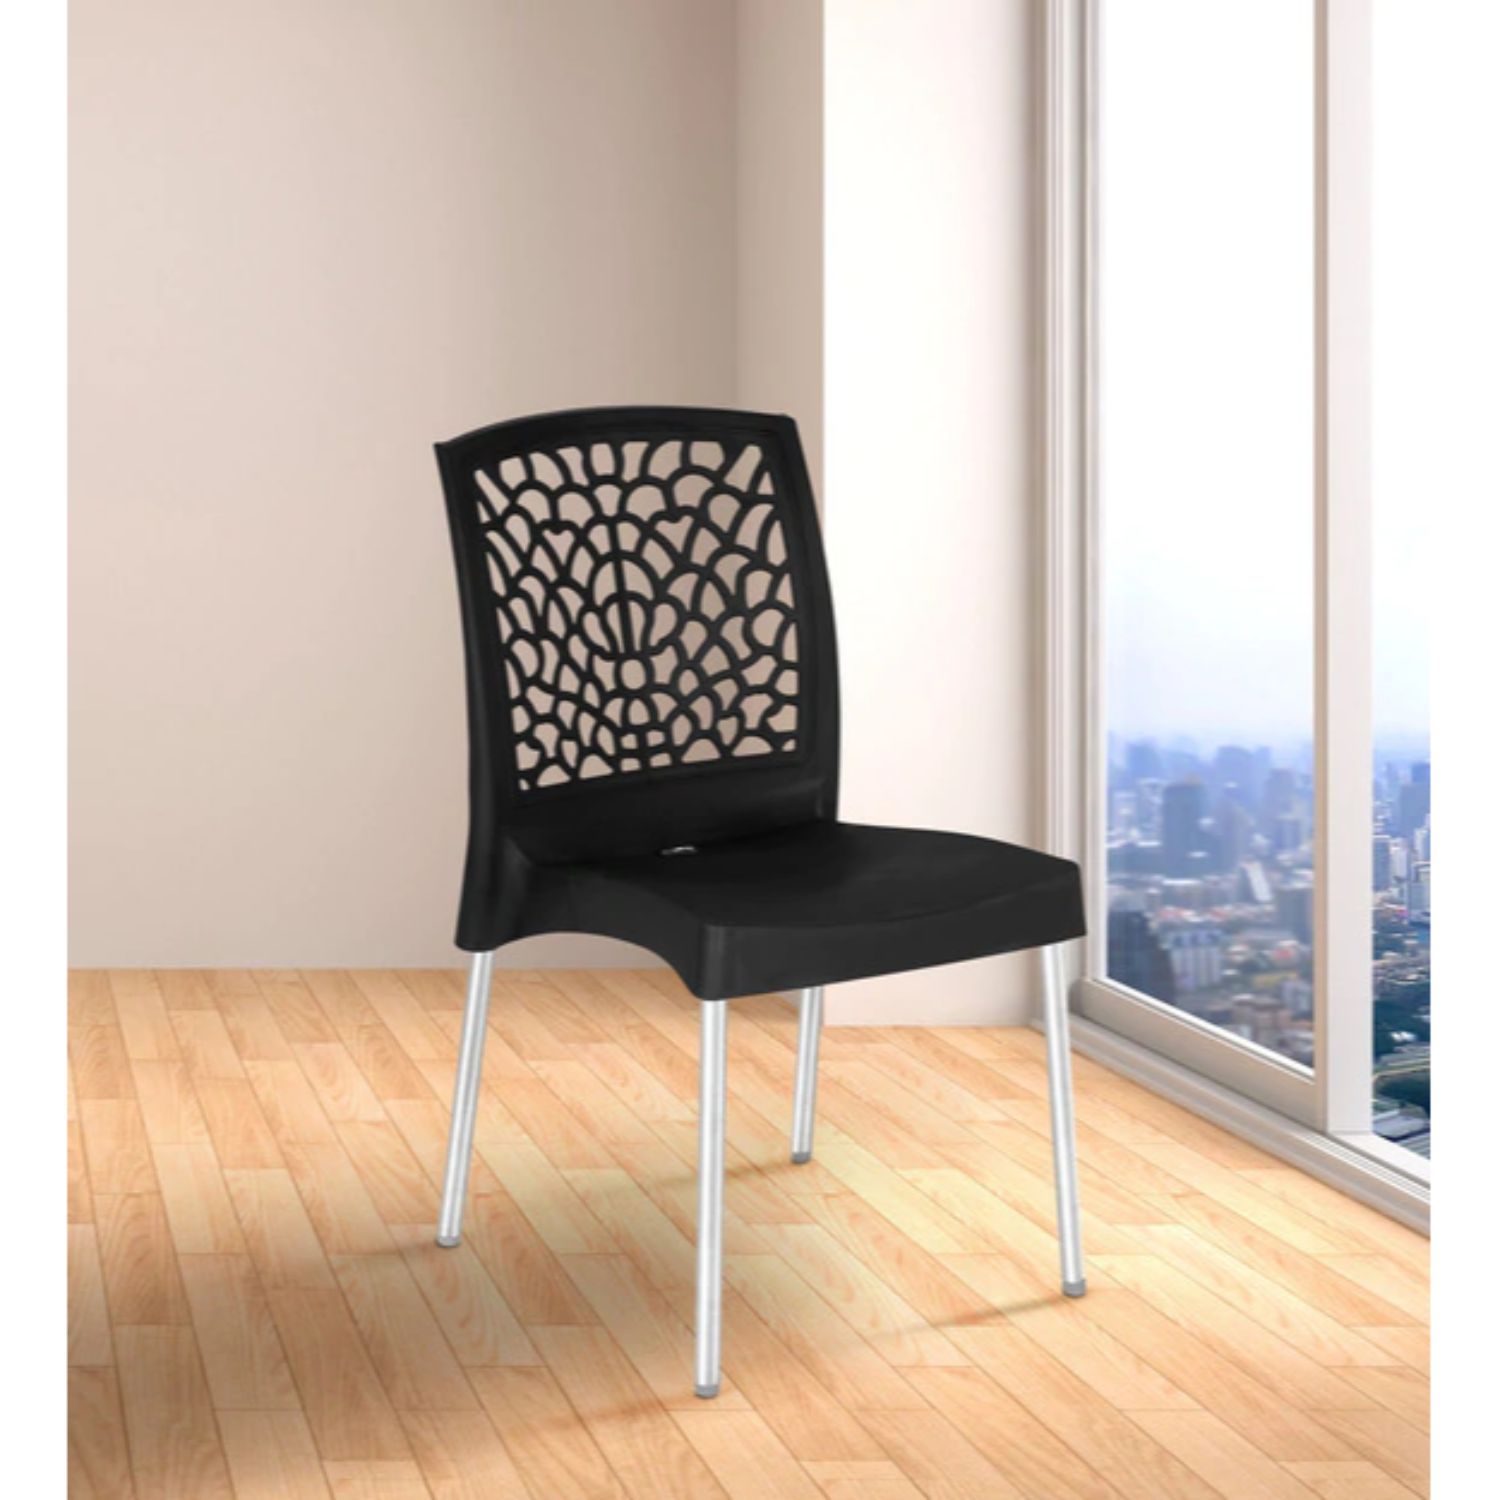 Nilkamal Novella 19 Stainless Steel Chair (Iron Black)